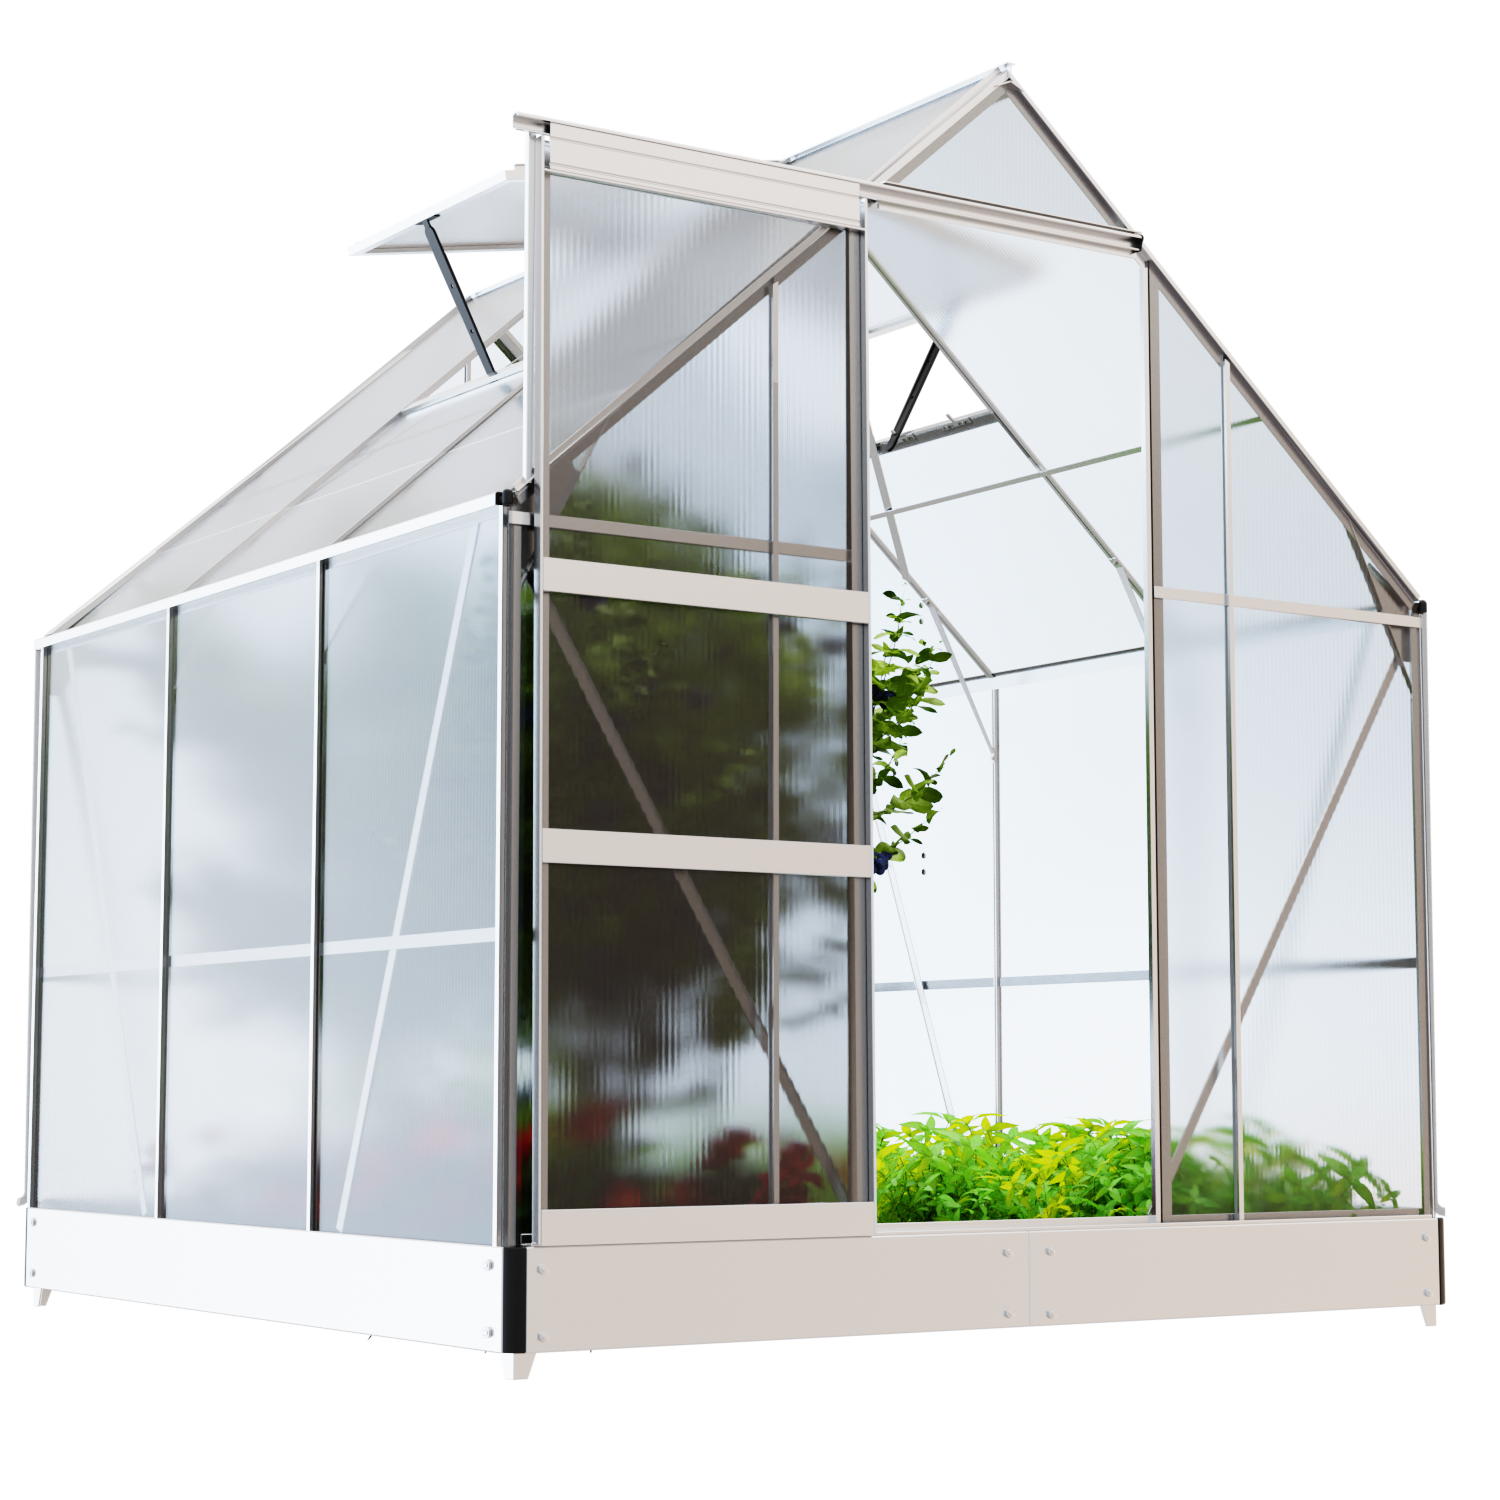 GARMIO® Gewächshaus CUNEO 190x190cm für den Garten, Alu Frühbeet inklusive Fundament, 2 Dachfenster Treibhaus Aufzucht